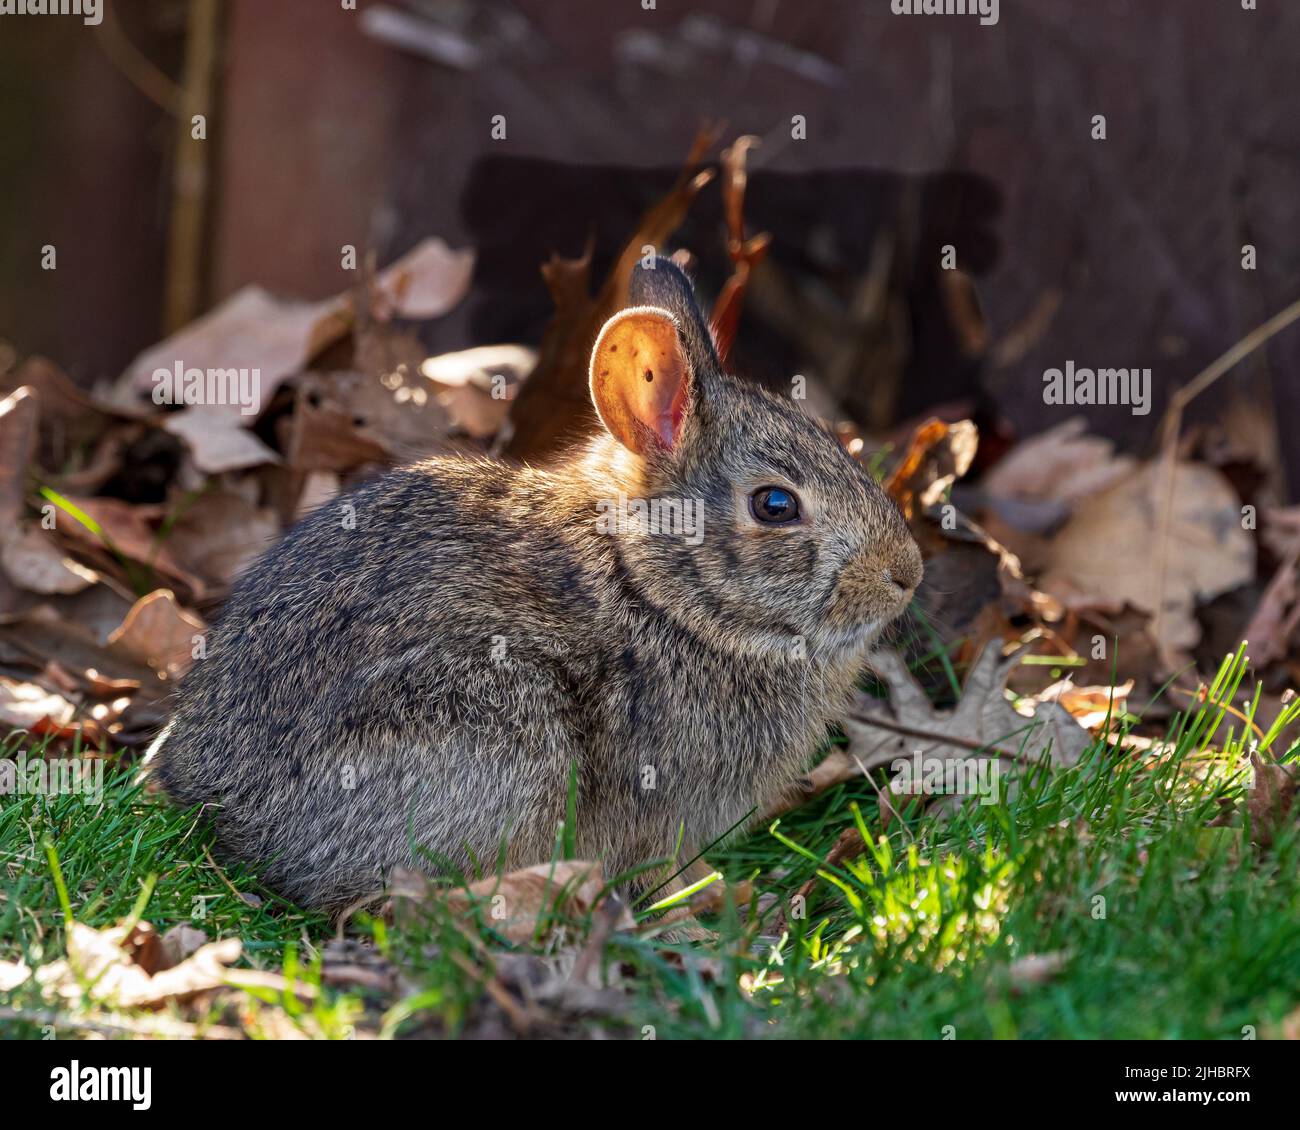 Conejo salvaje de cola de algodón con garrapata dentro de la oreja. Vida silvestre, animales y el concepto de conservación del hábitat. Foto de stock